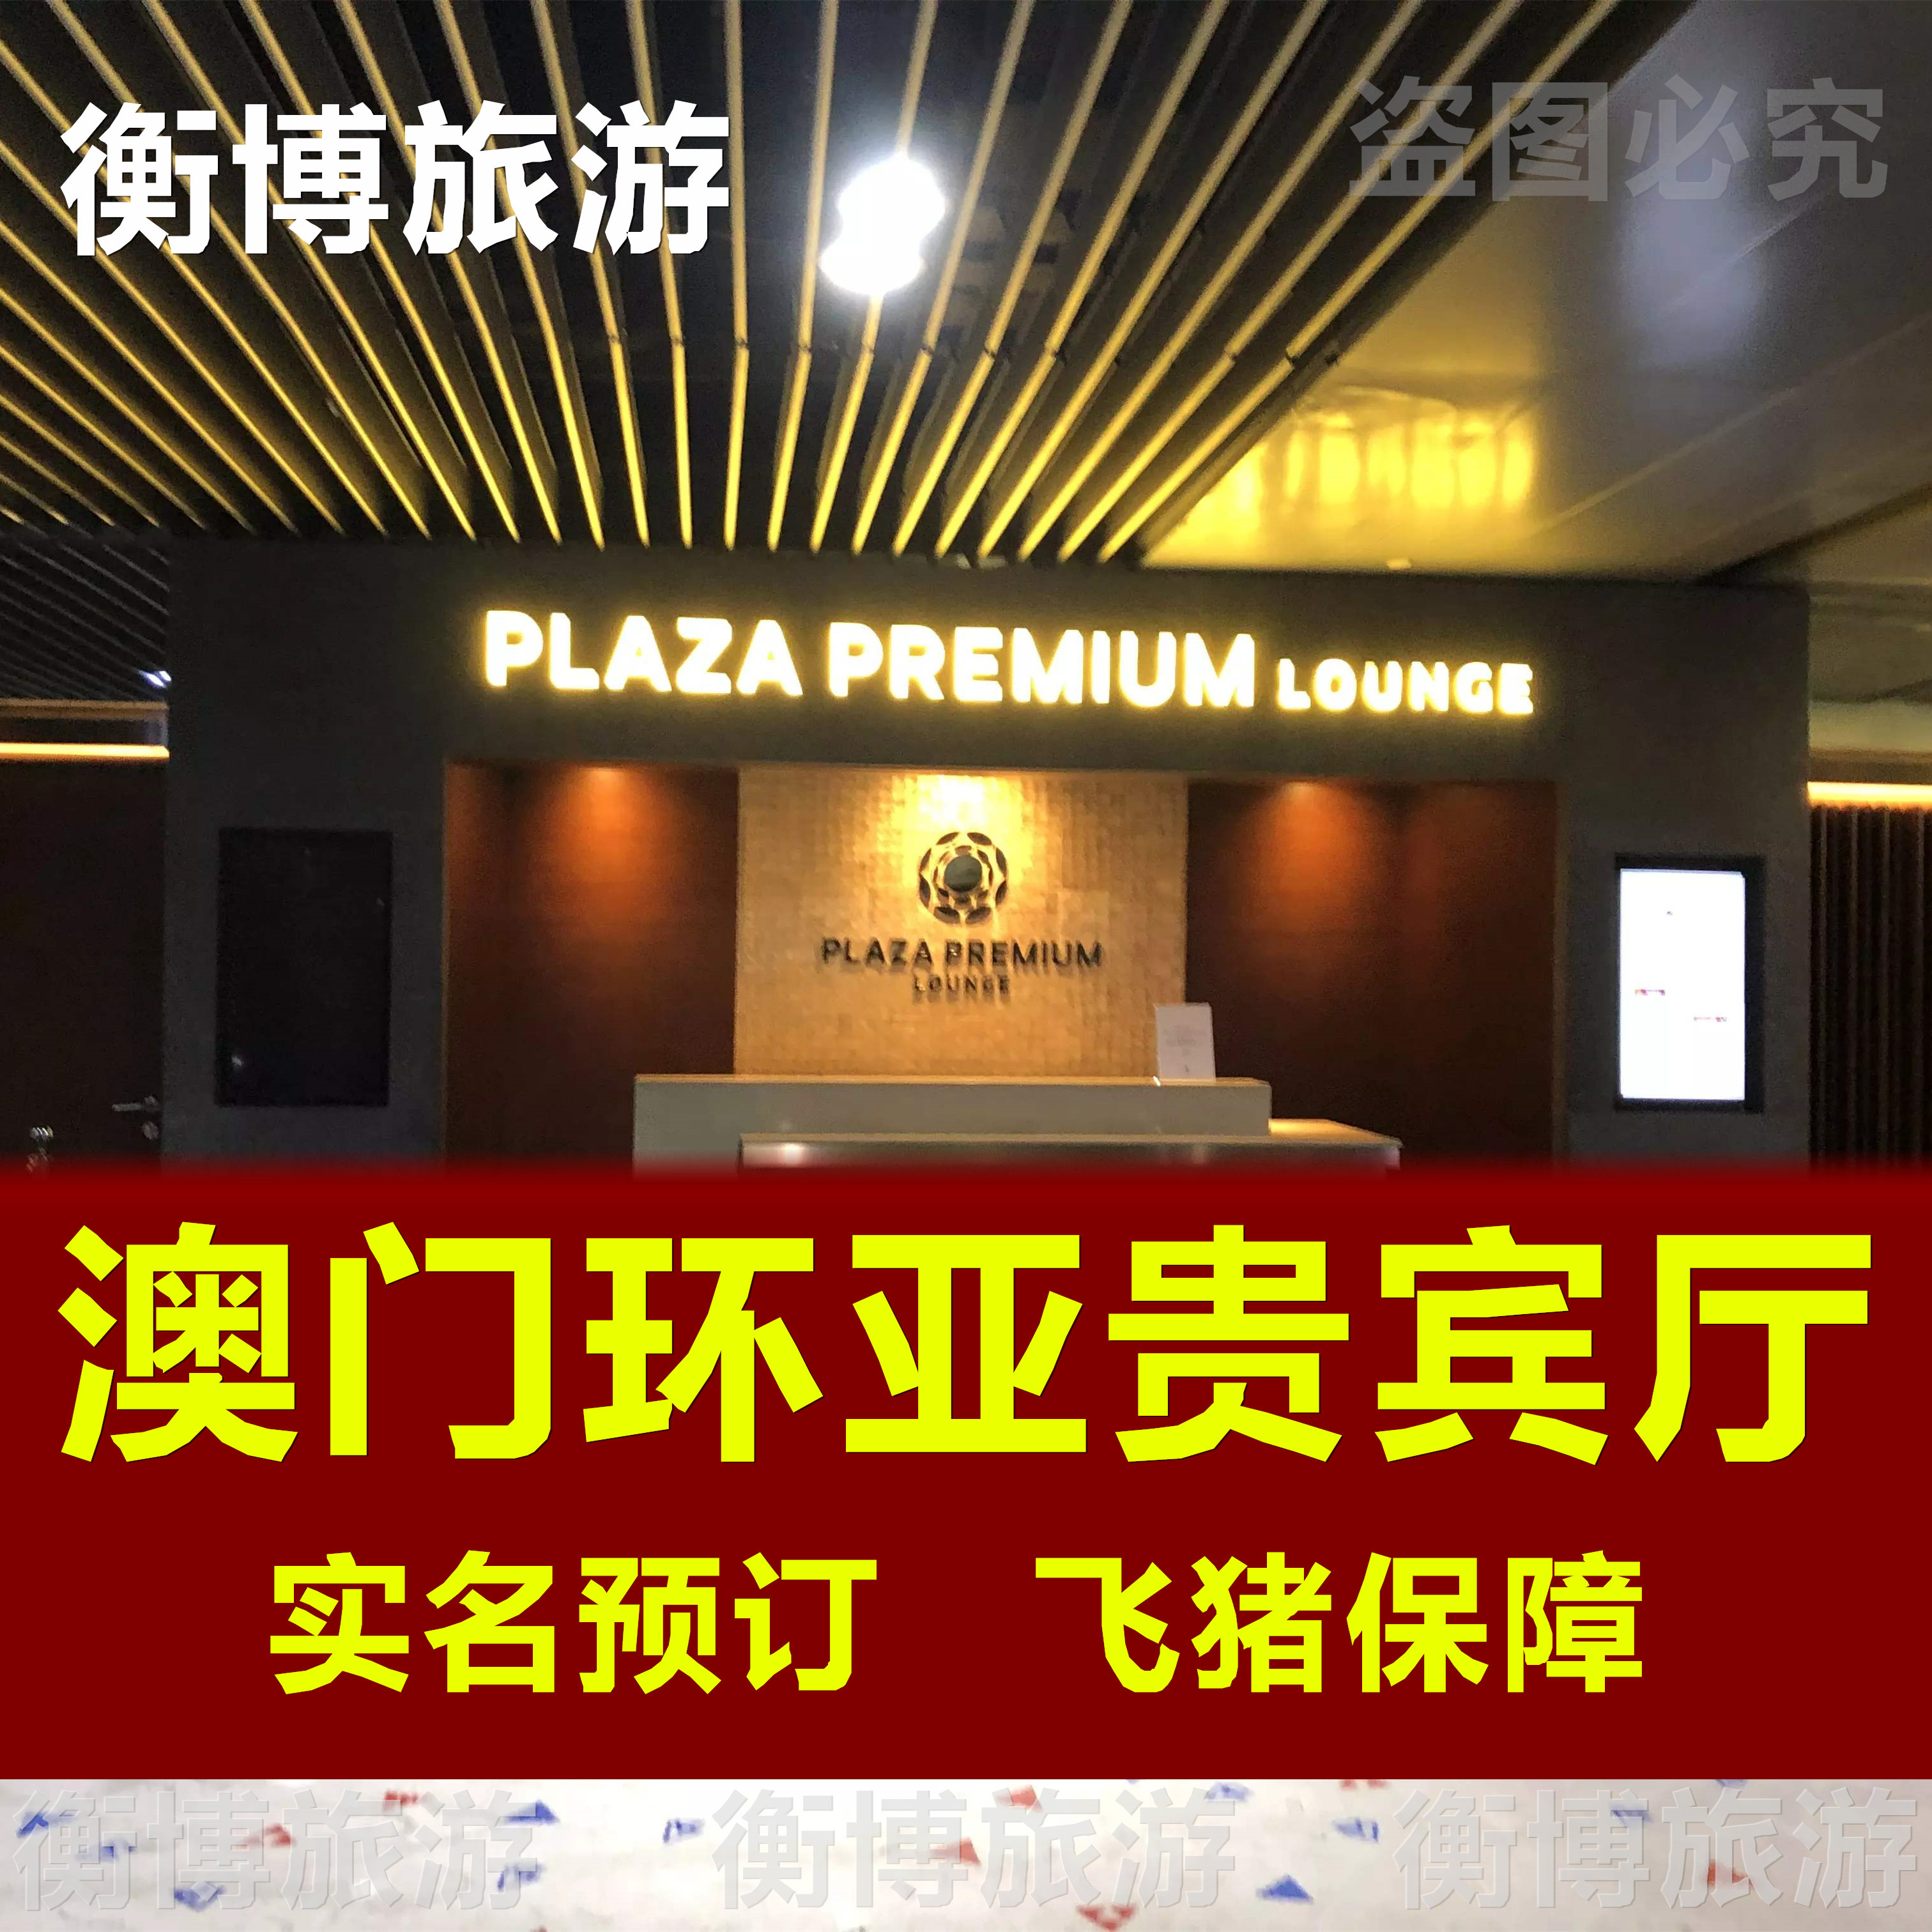 MFM澳门国际机场贵宾厅 环亚休息室转机 vip贵宾室Plaza Premium